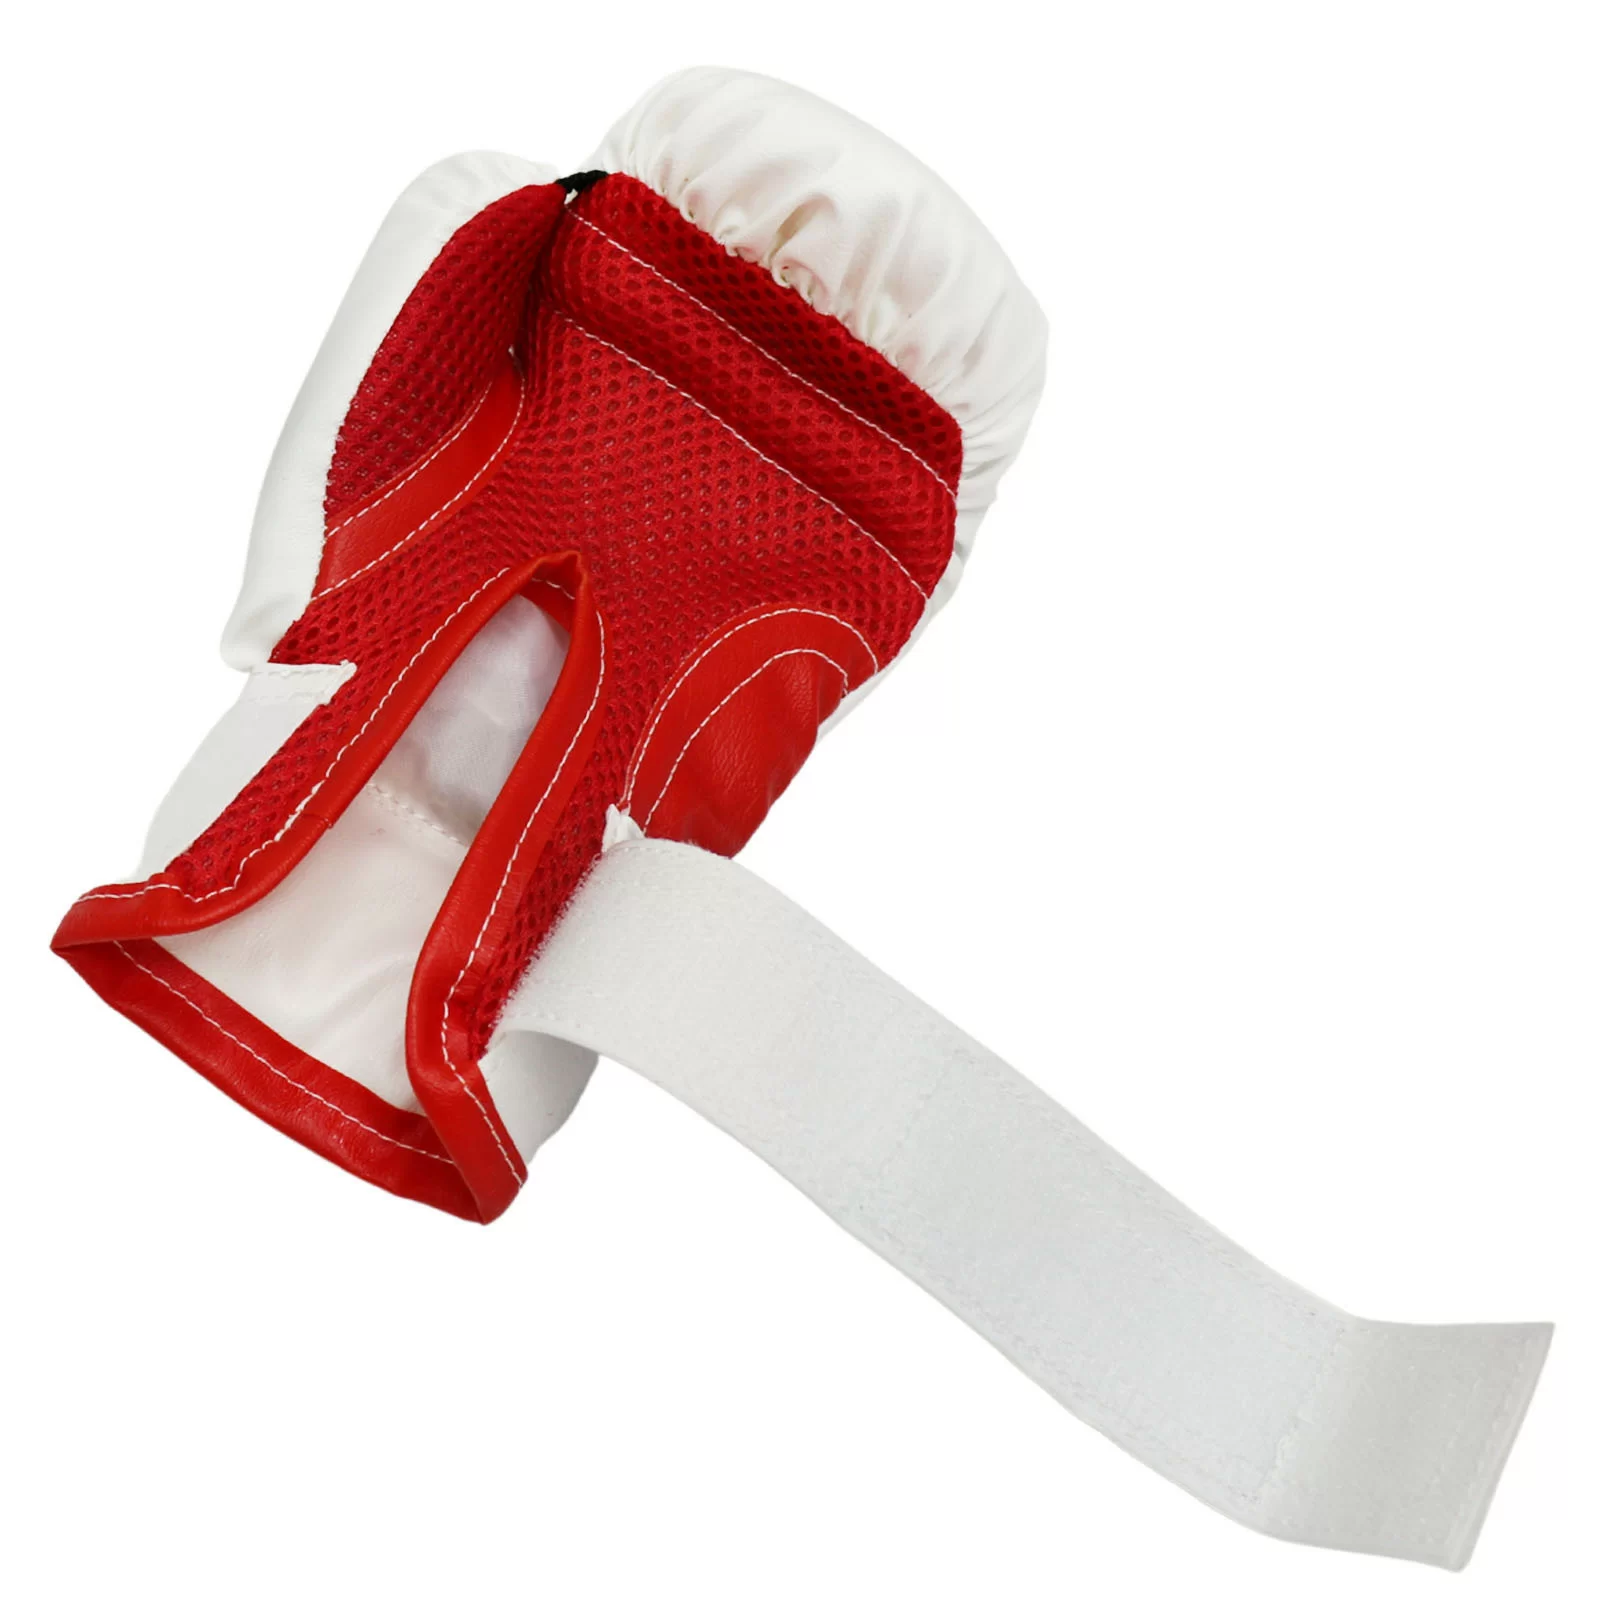 Реальное фото Набор боксерский для начинающих RuscoSport Триколор (перчатки бокс. 6 oz) красный от магазина СпортСЕ